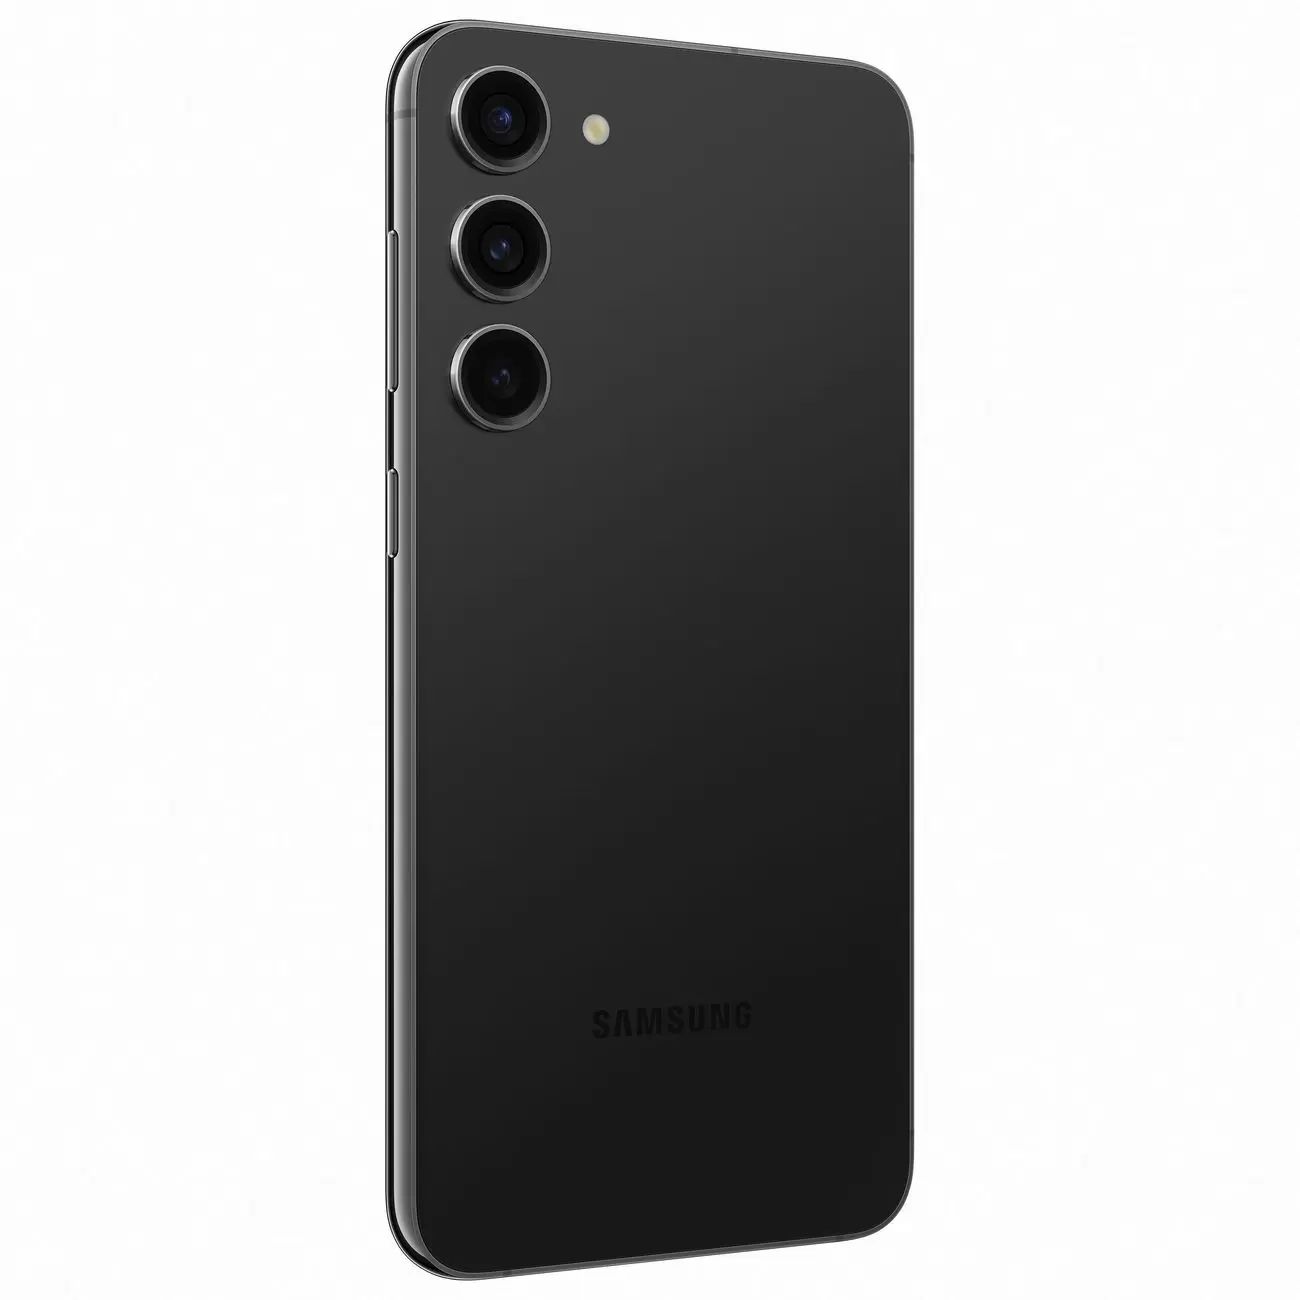 Мое мнение о смартфоне Samsung GALAXY J1